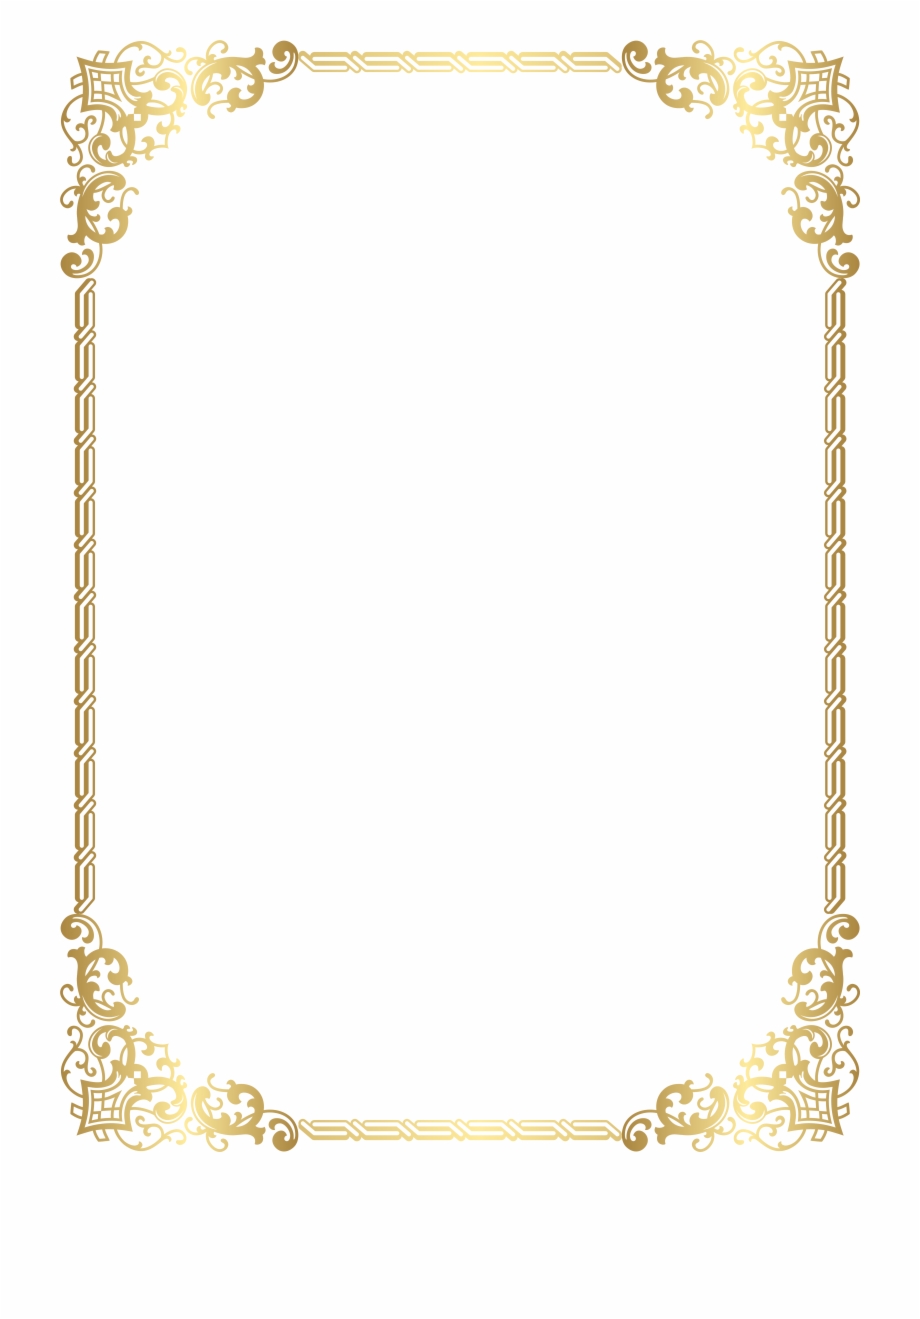 Gold border frame.